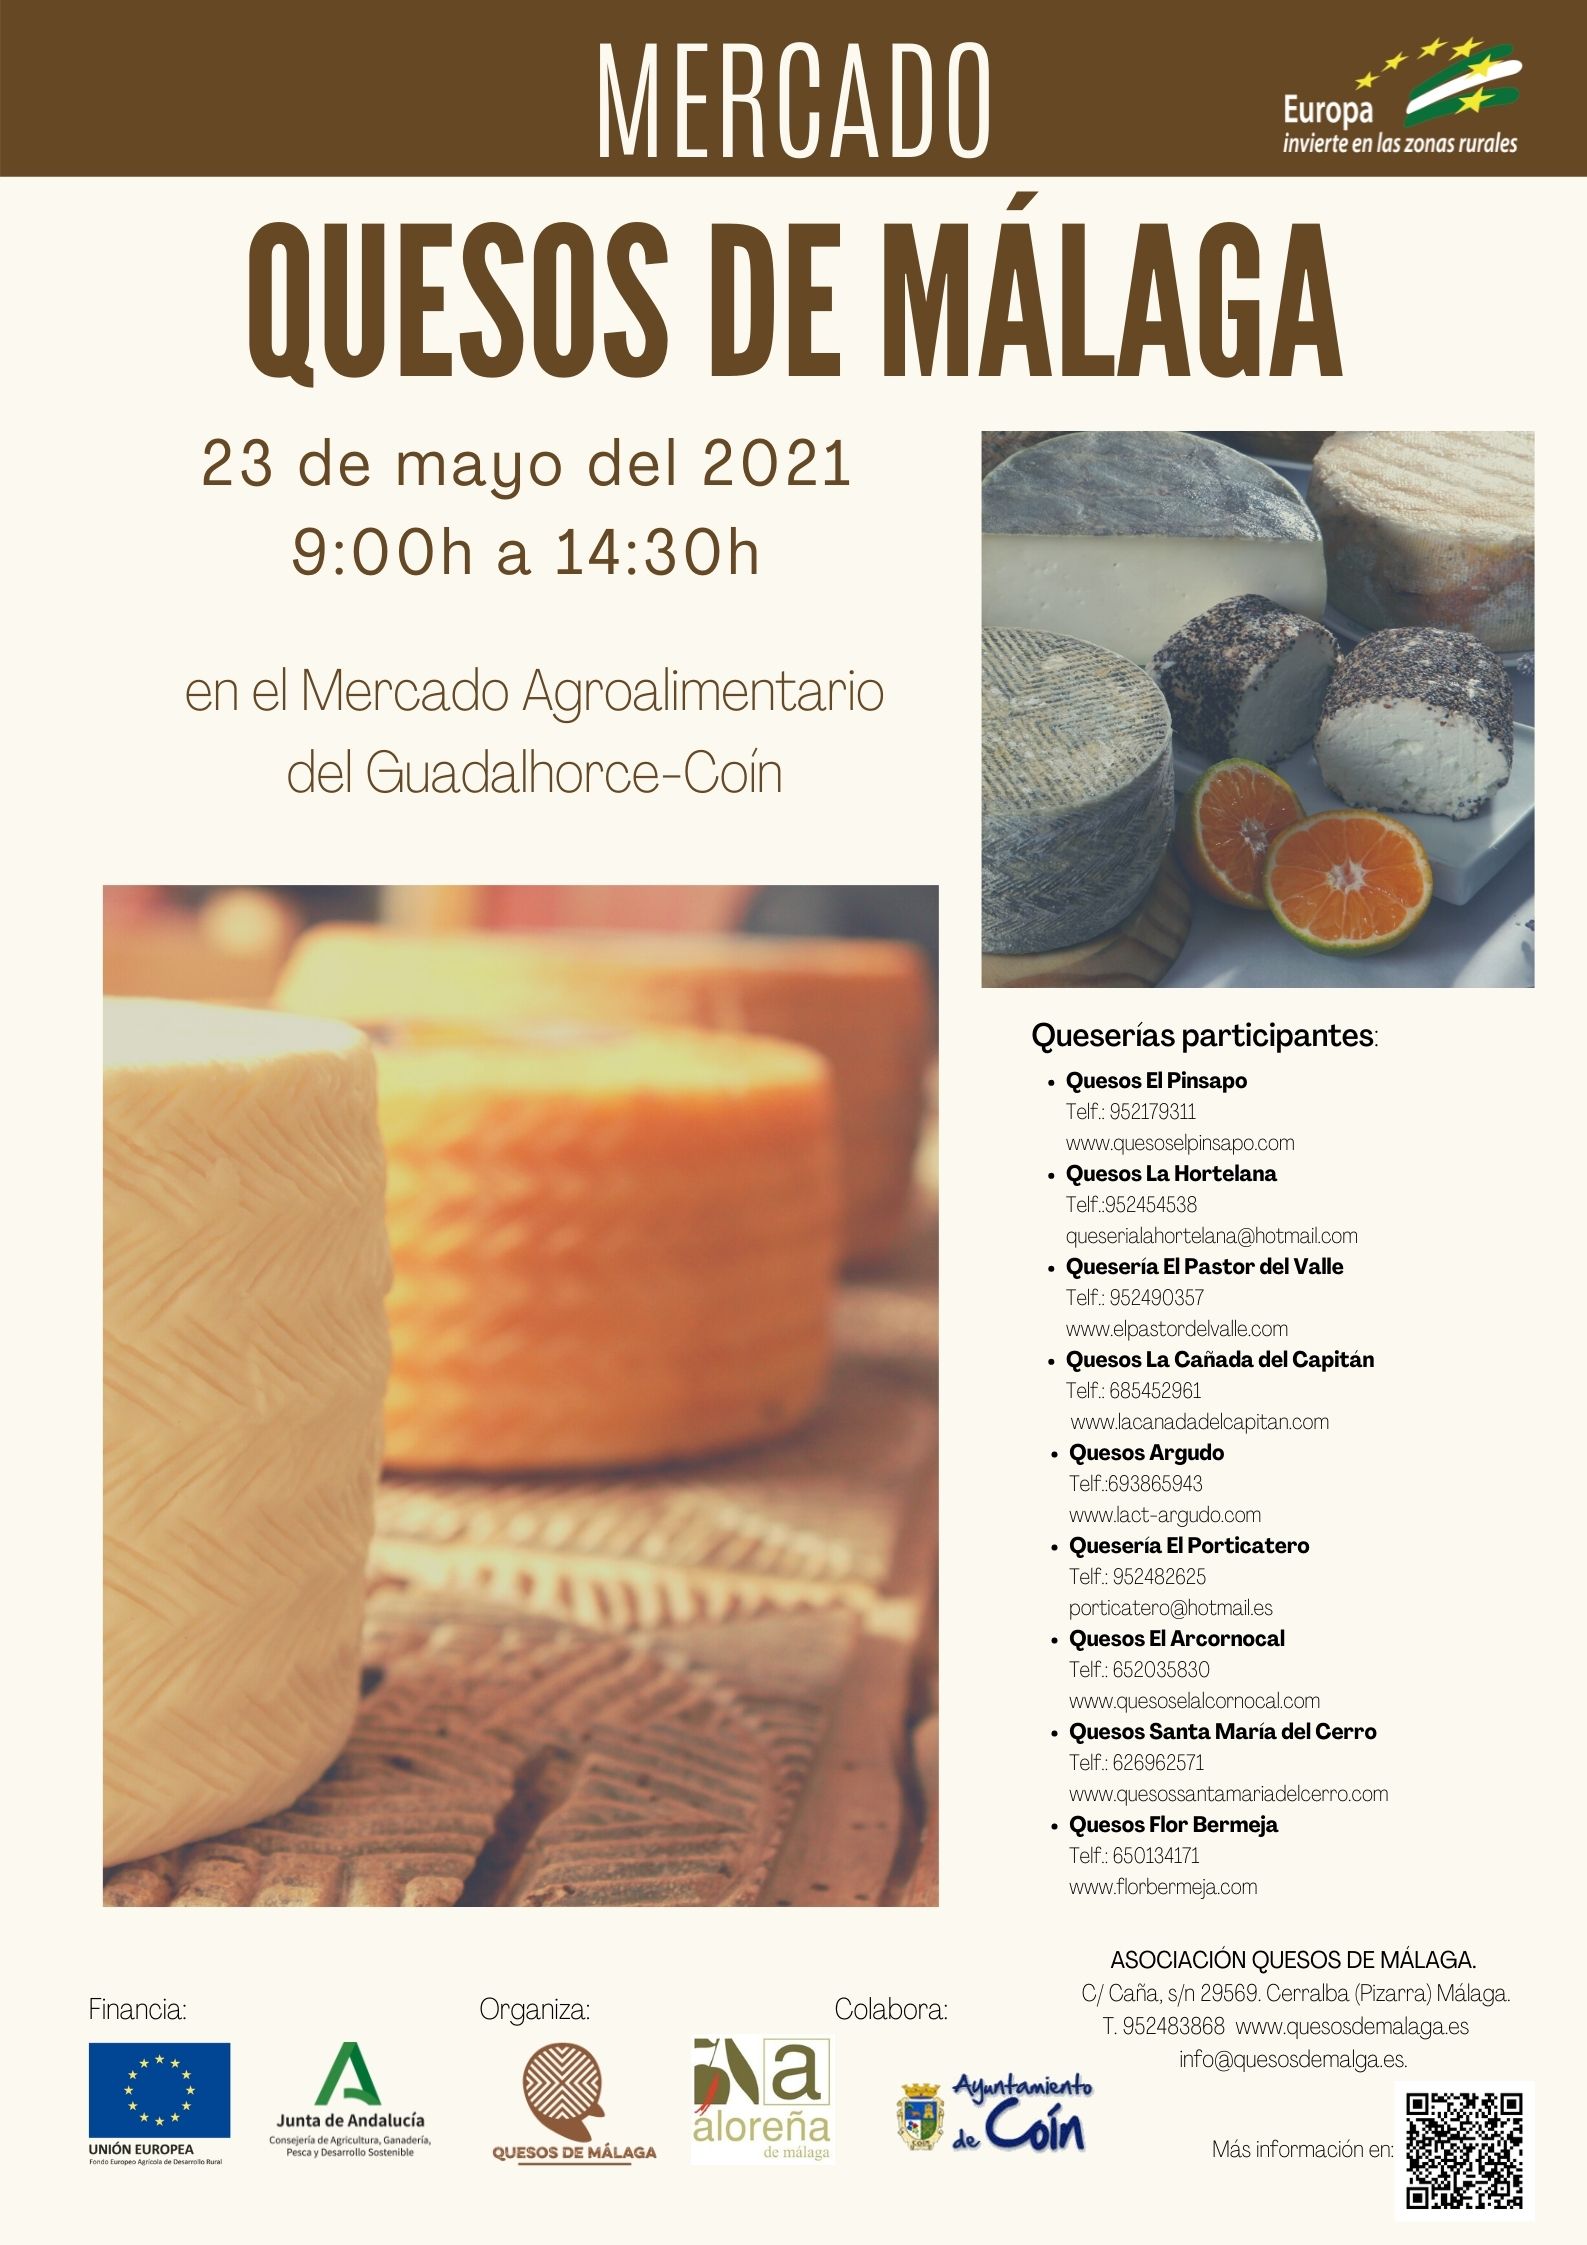 /ficheros/actualidad/cartel mercado de quesos de malaga.jpg